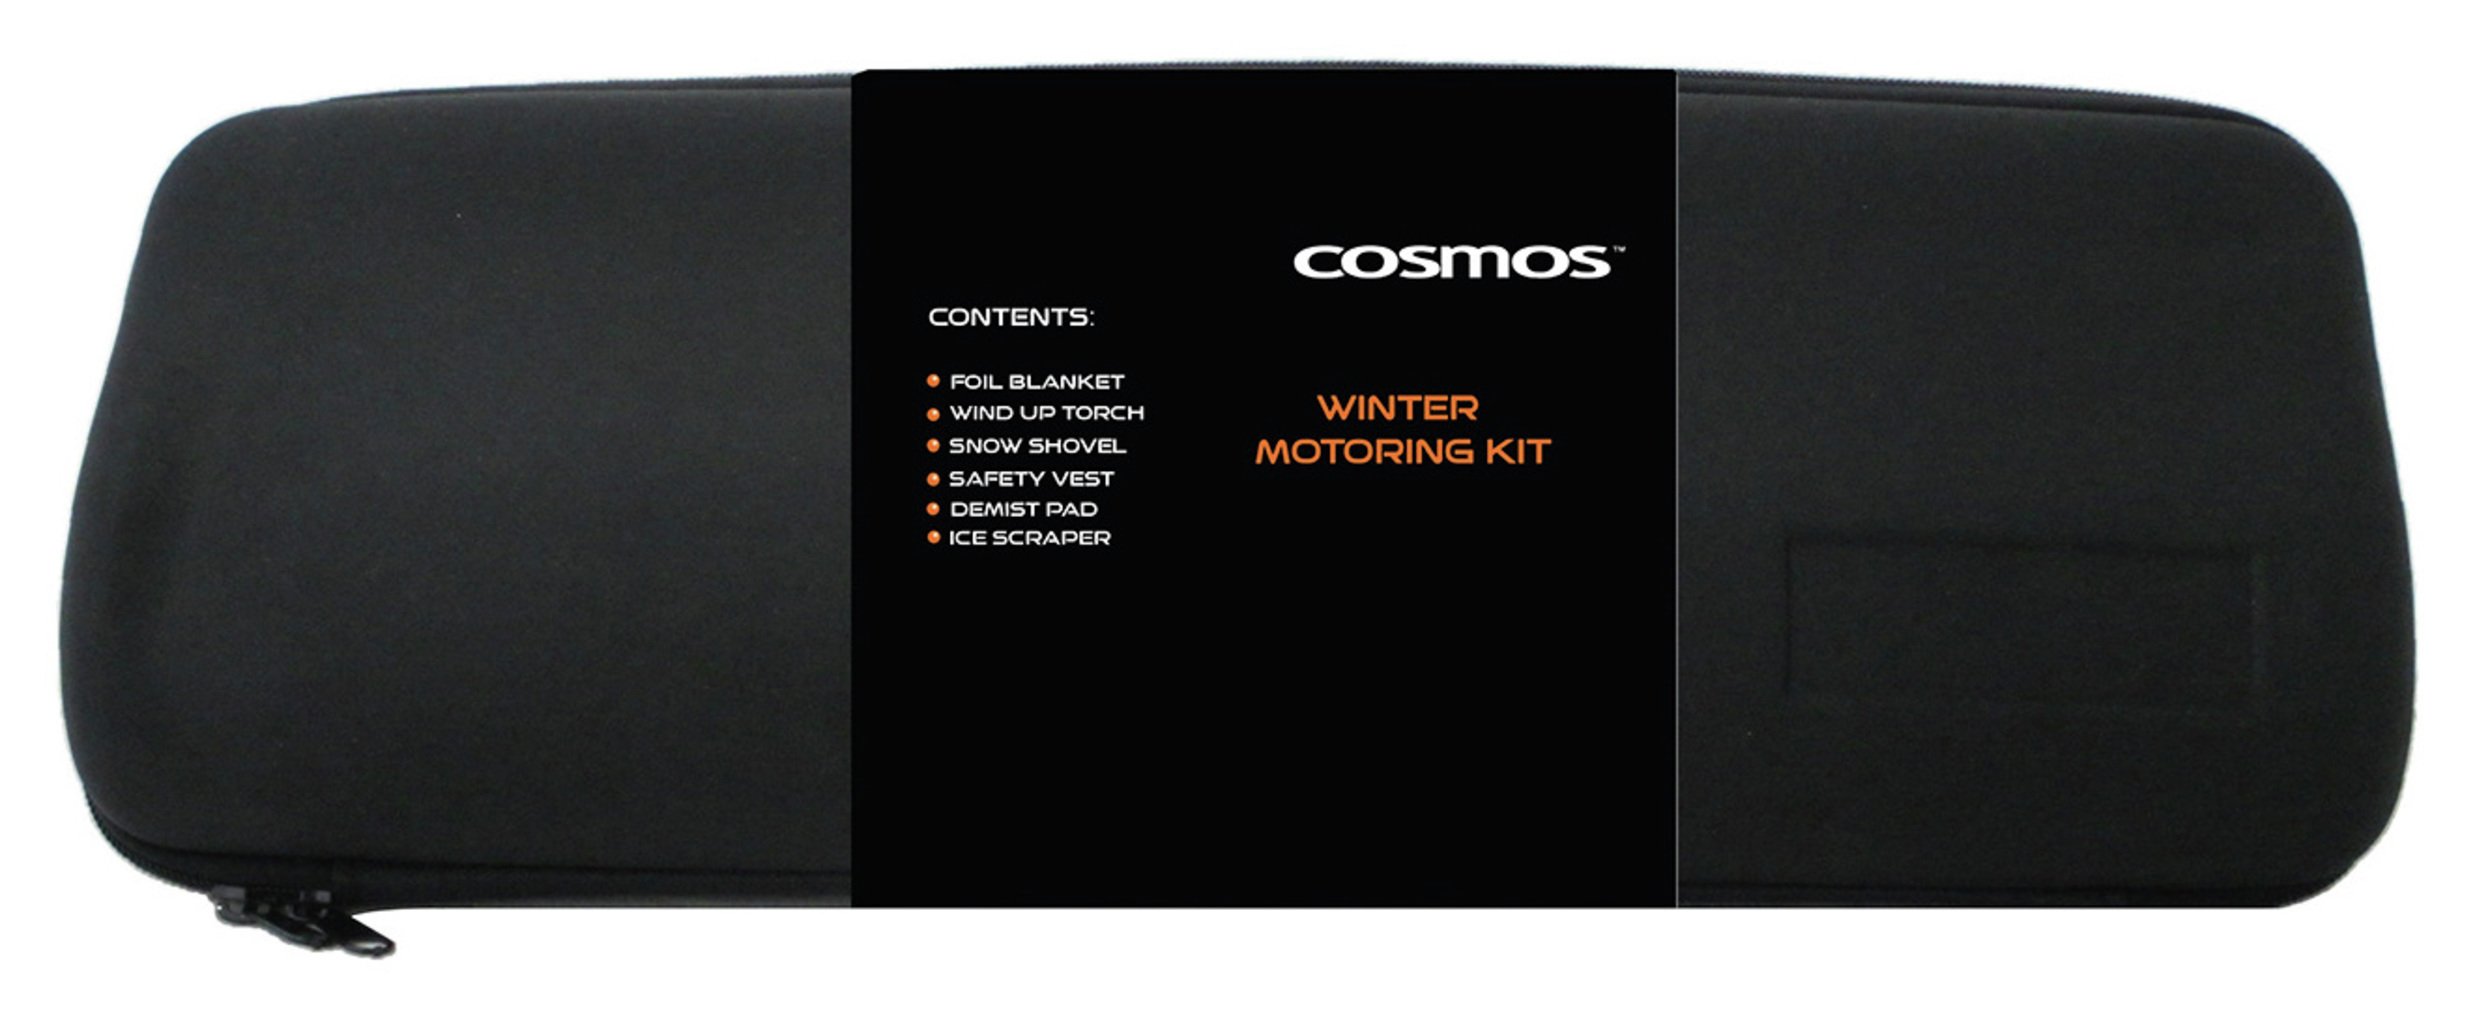 Cosmos Winter Motoring Kit